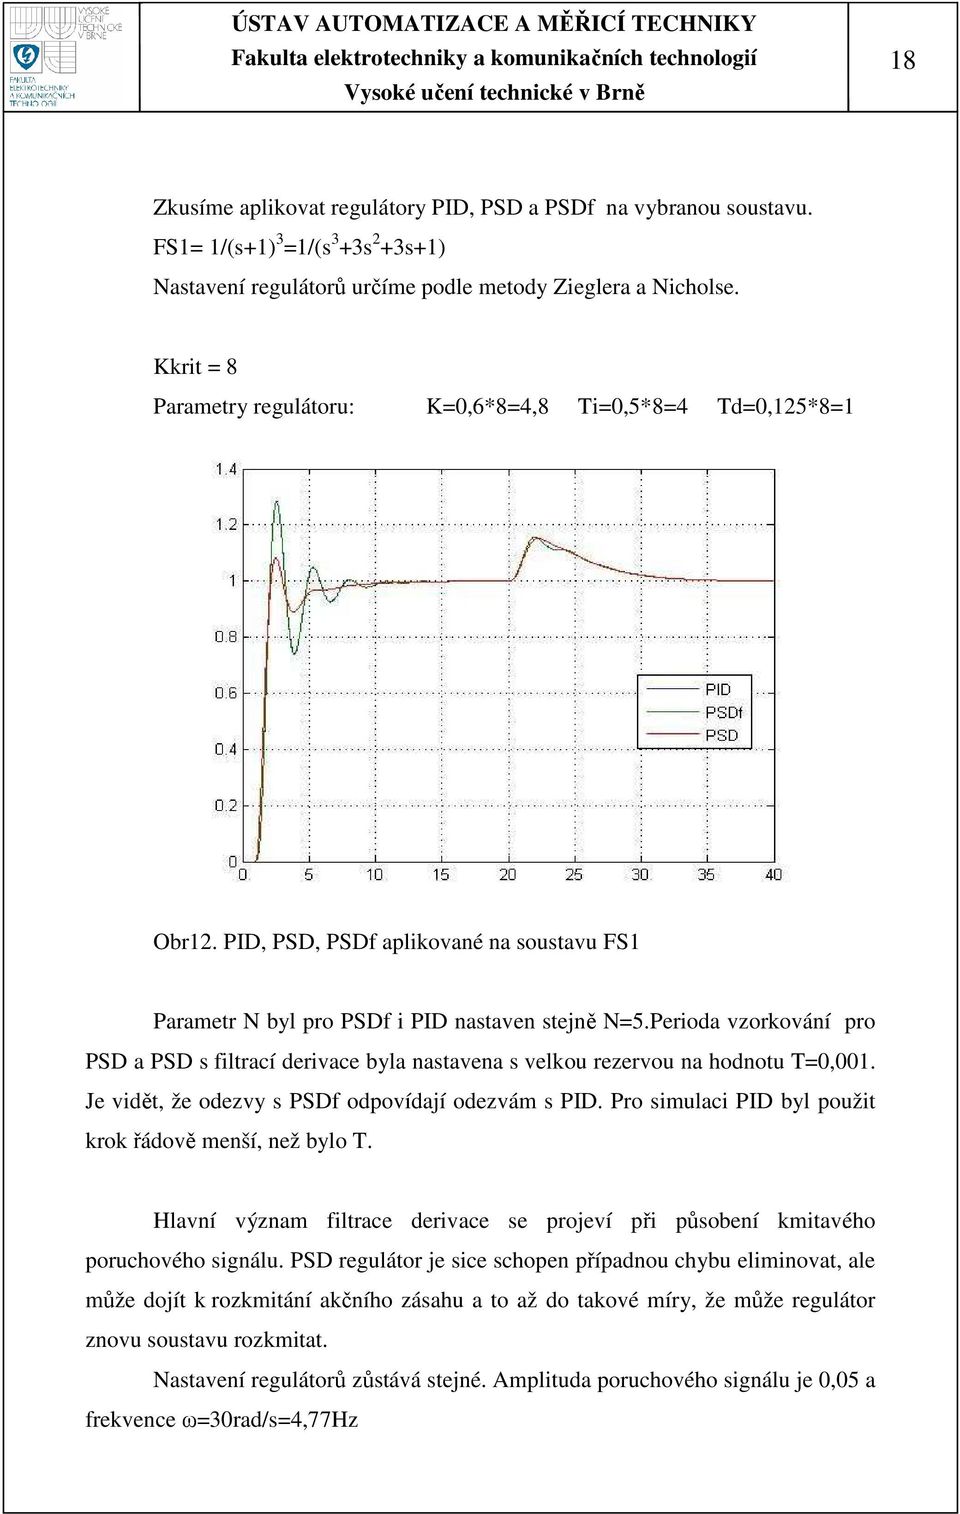 Perioda vzorkování pro PSD a PSD s filtrací derivace byla nastavena s velkou rezervou na hodnotu T=0,001. Je vidět, že odezvy s PSDf odpovídají odezvám s PID.